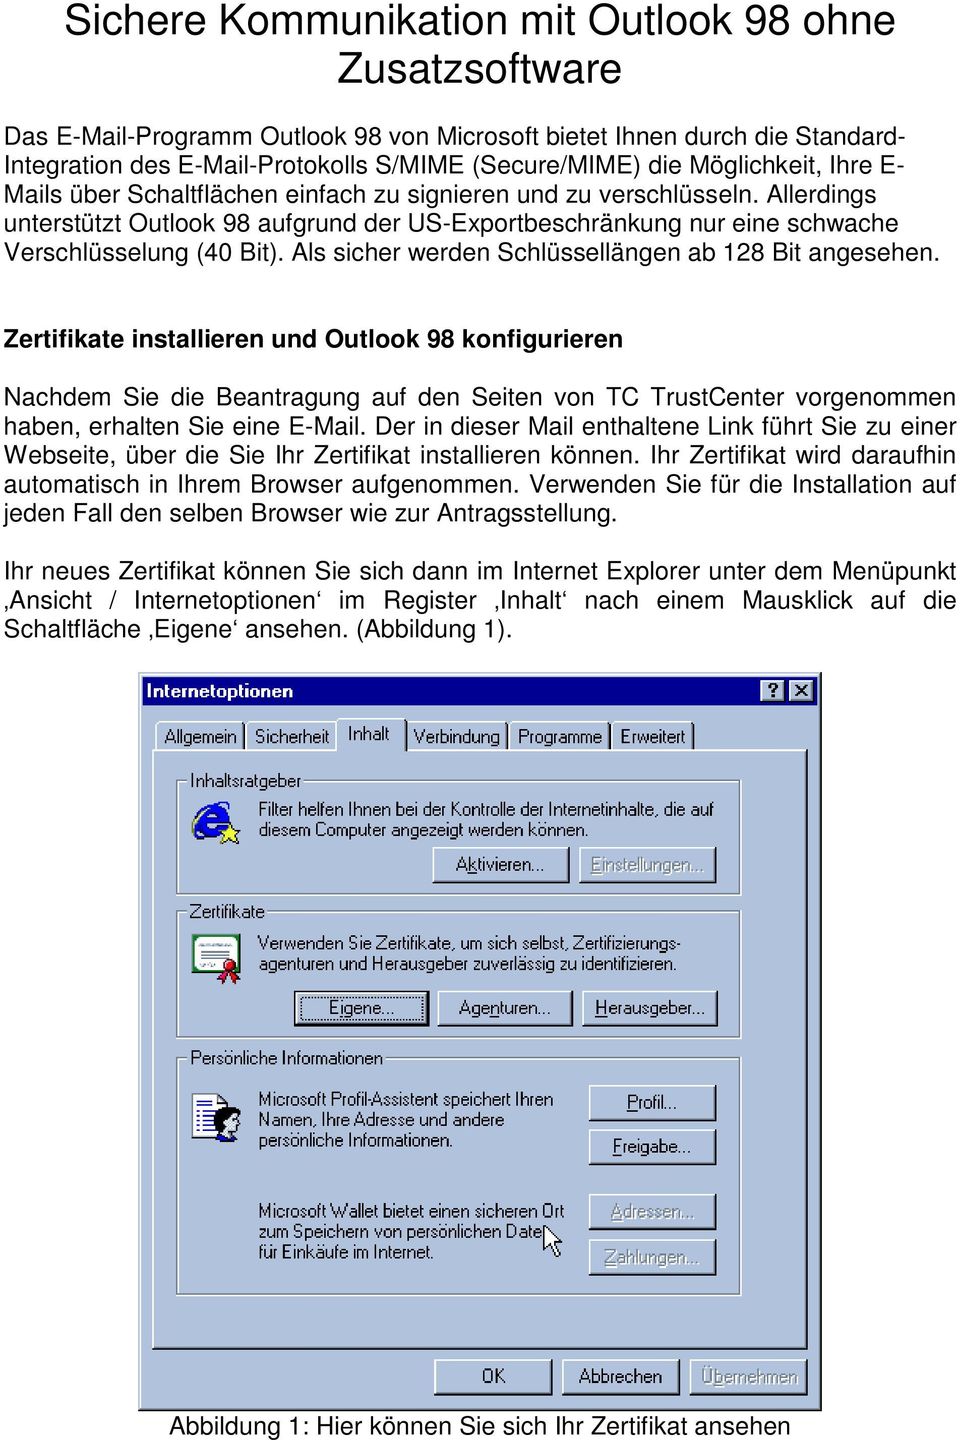 Allerdings unterstützt Outlook 98 aufgrund der US-Exportbeschränkung nur eine schwache Verschlüsselung (40 Bit). Als sicher werden Schlüssellängen ab 128 Bit angesehen.